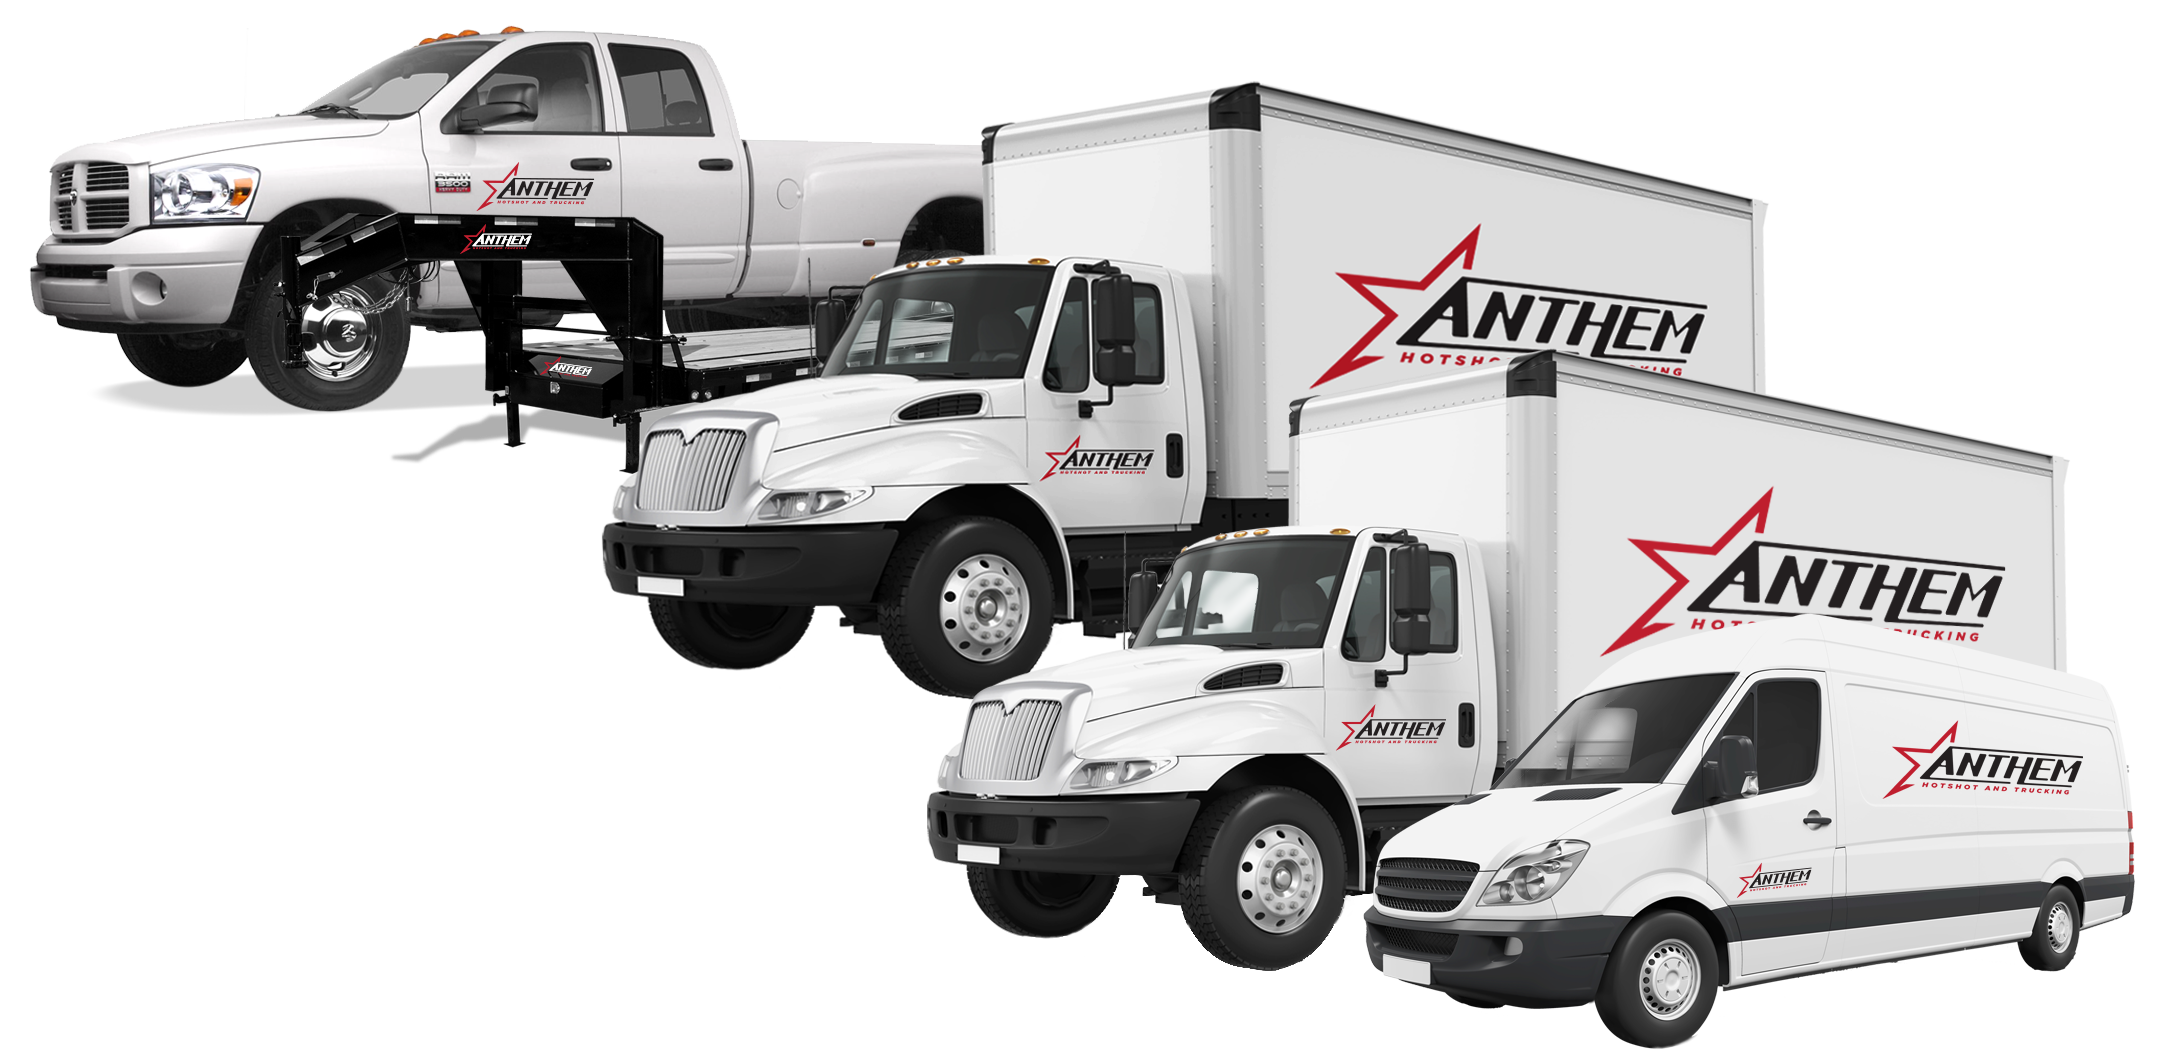 Our Fleet - Anthem Hotshot and Trucking - San Antonio, Texas